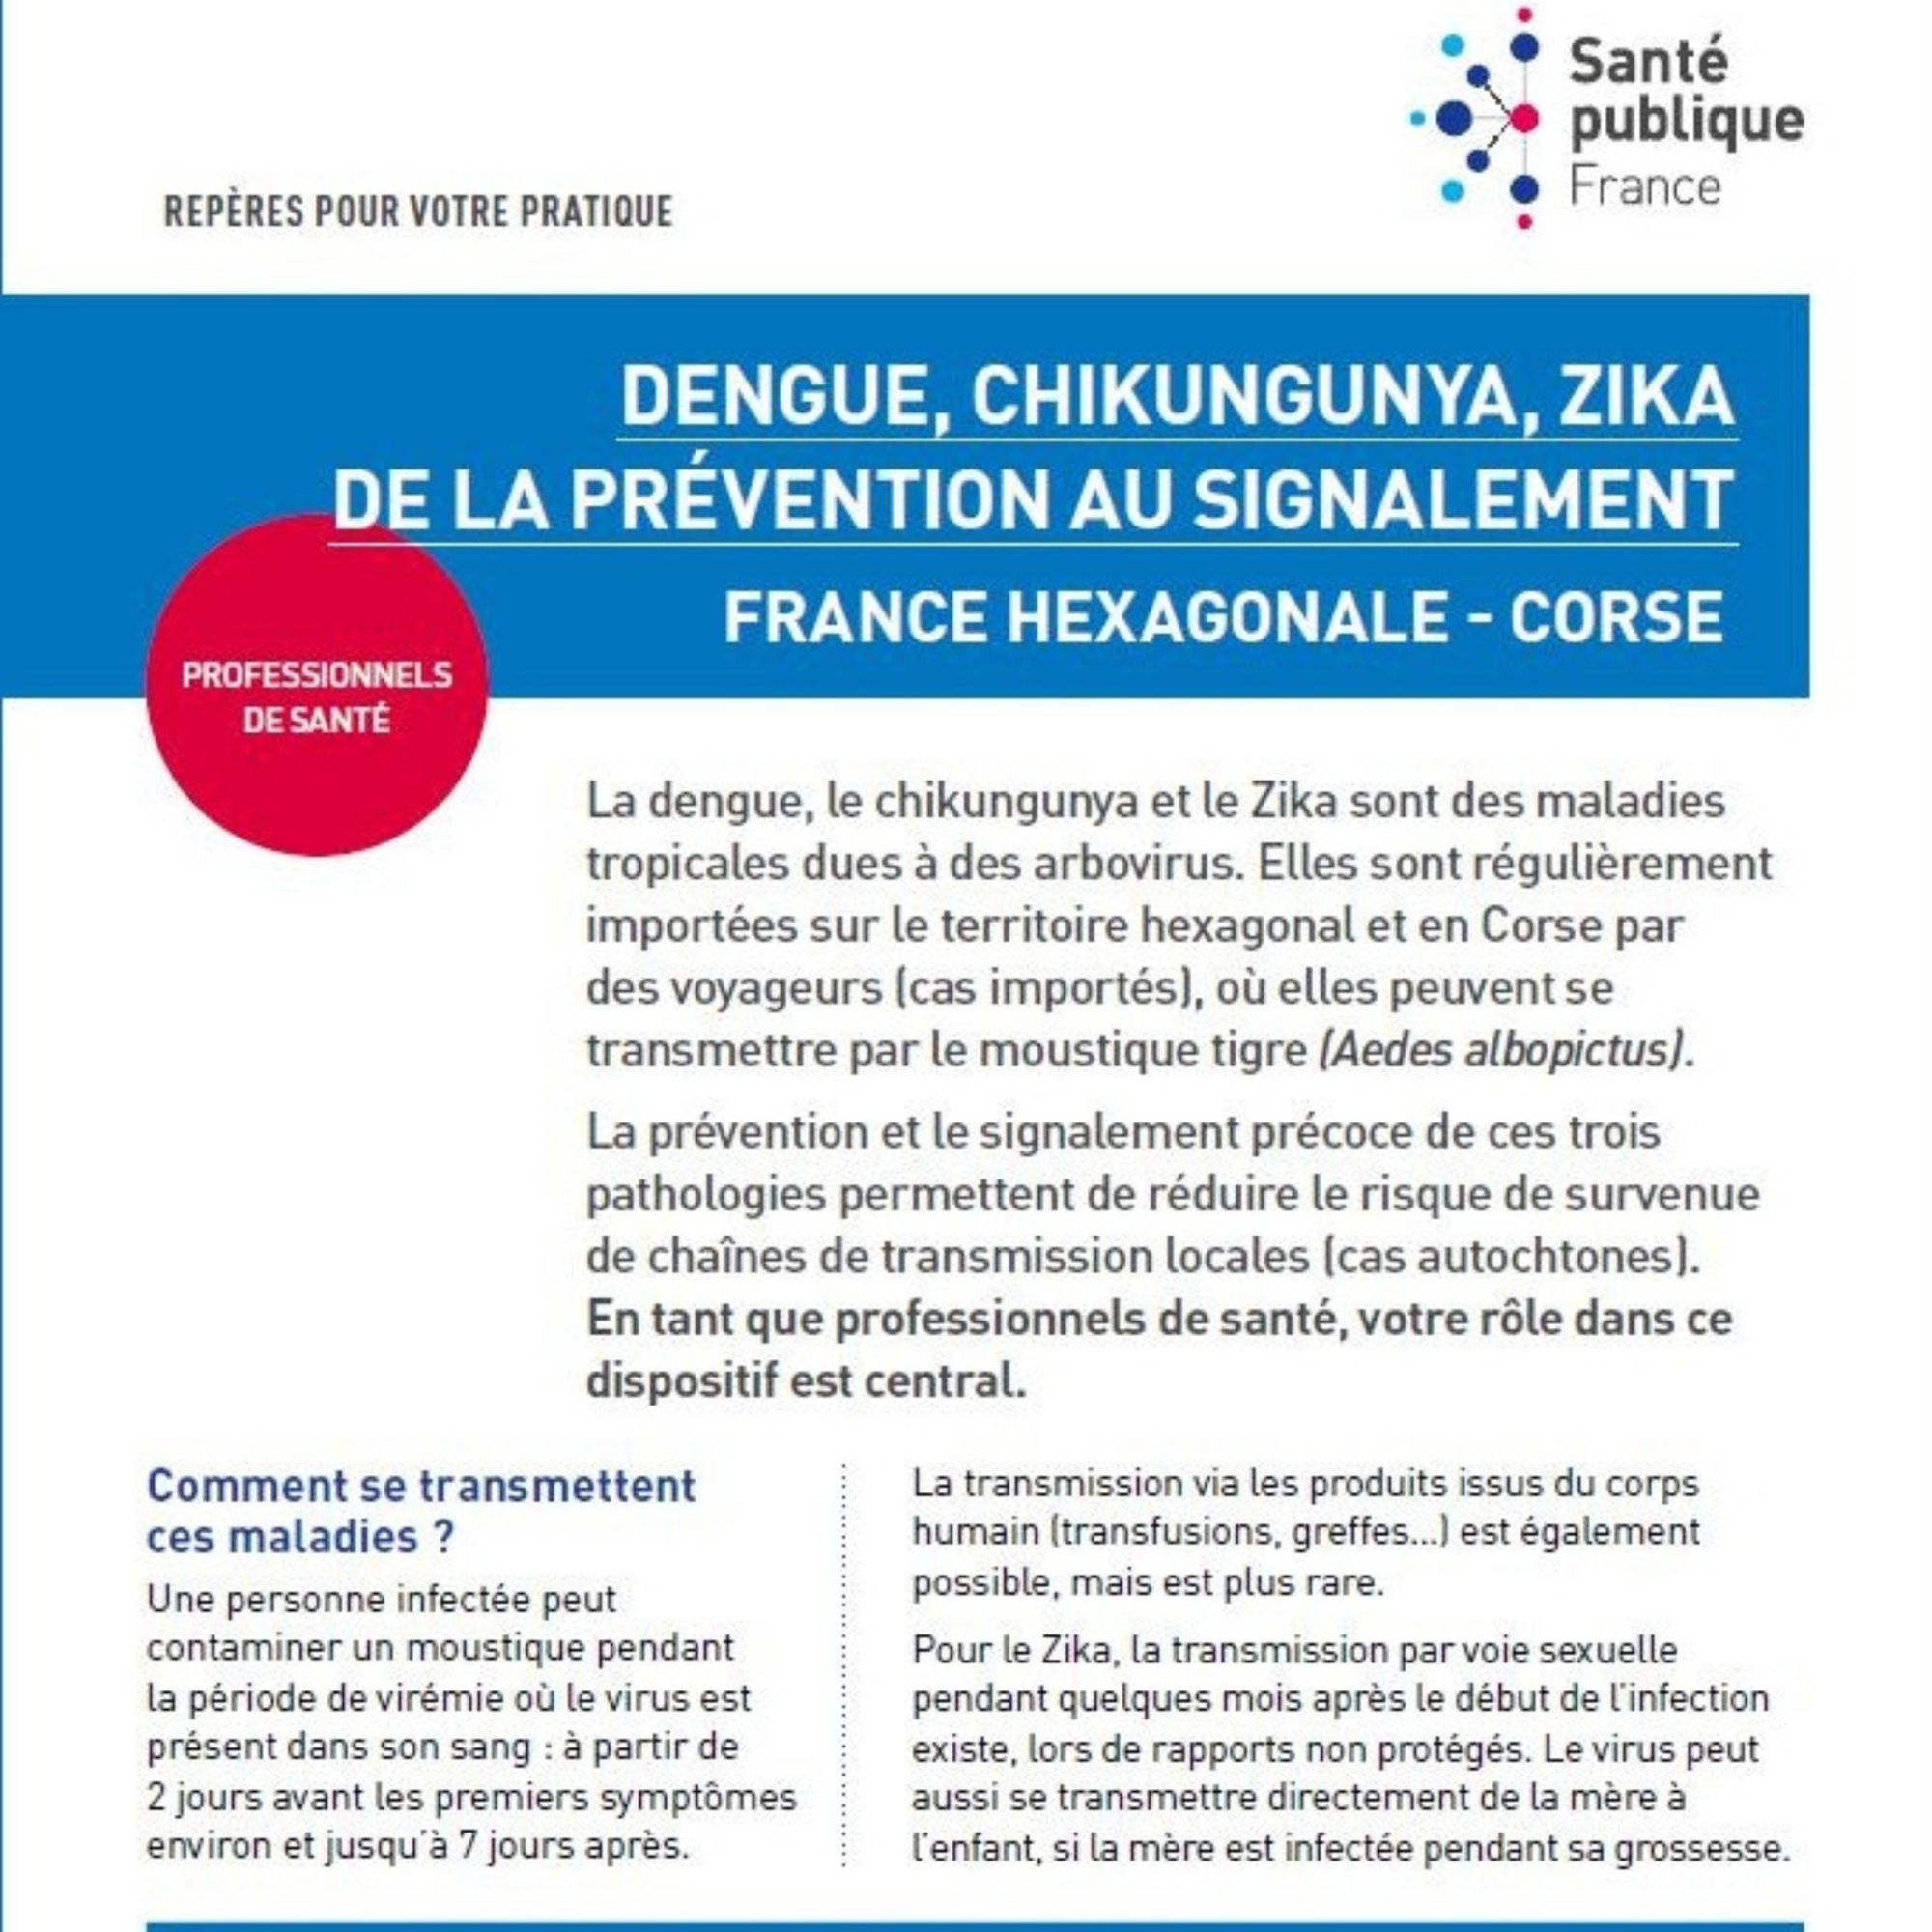 Dengue, chikungunya, Zika : de la prévention au signalement. France hexagonale - Corse